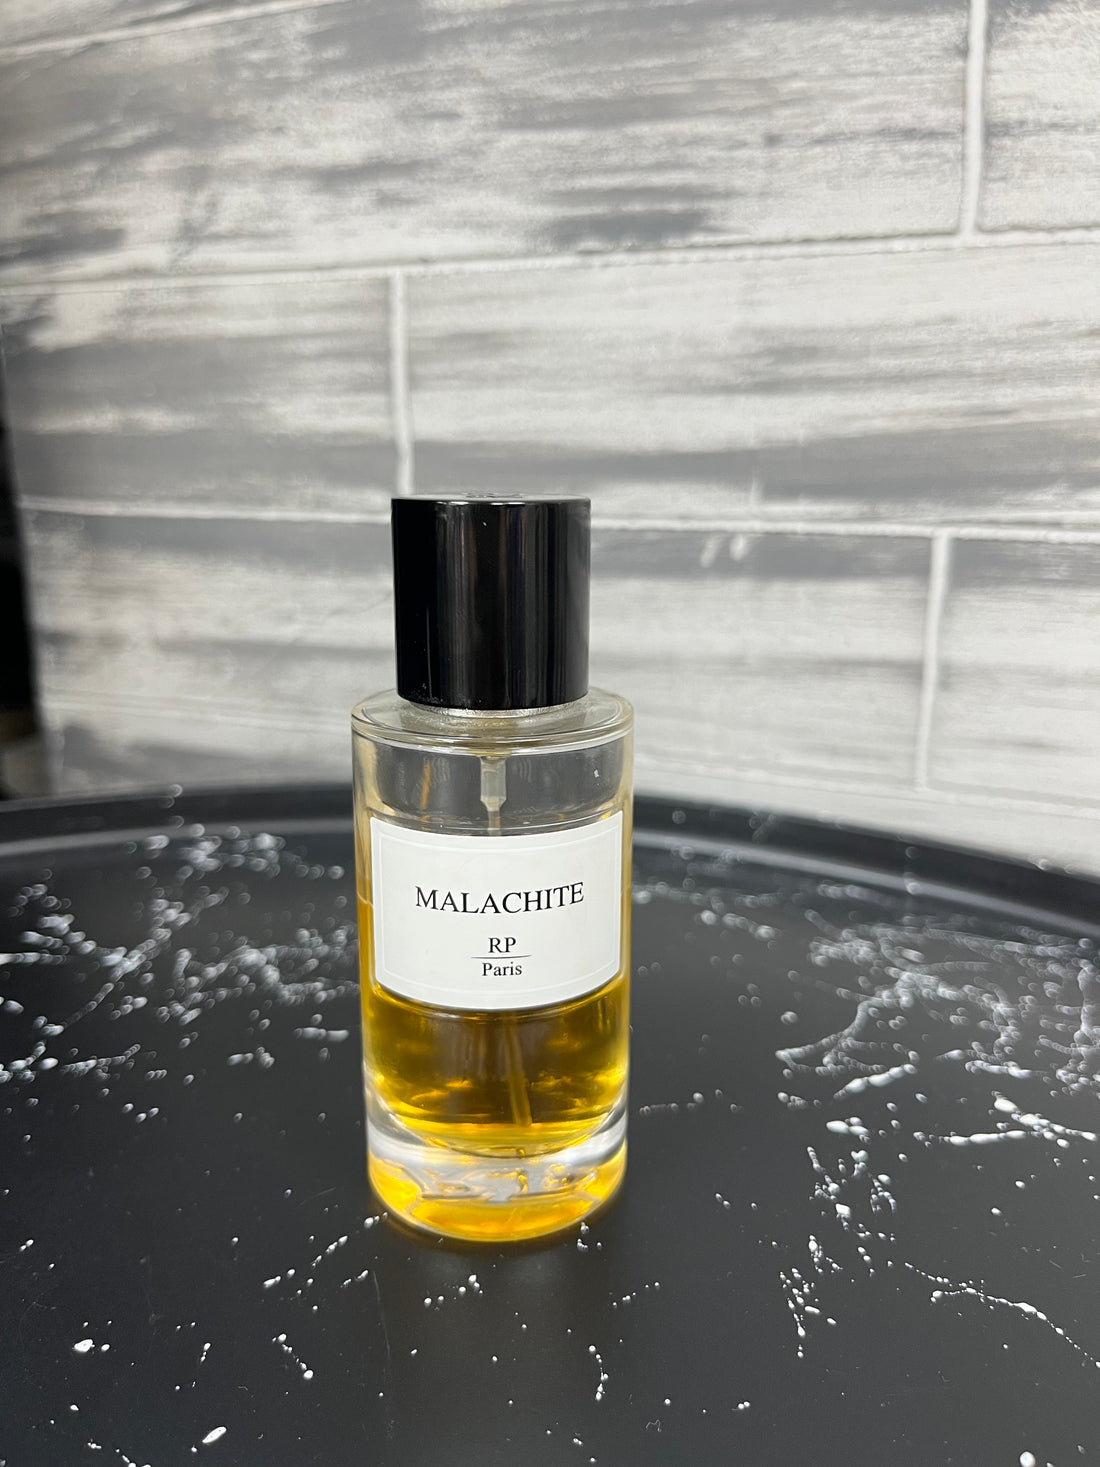 RP Paris - Parfum Malachite - Stayin